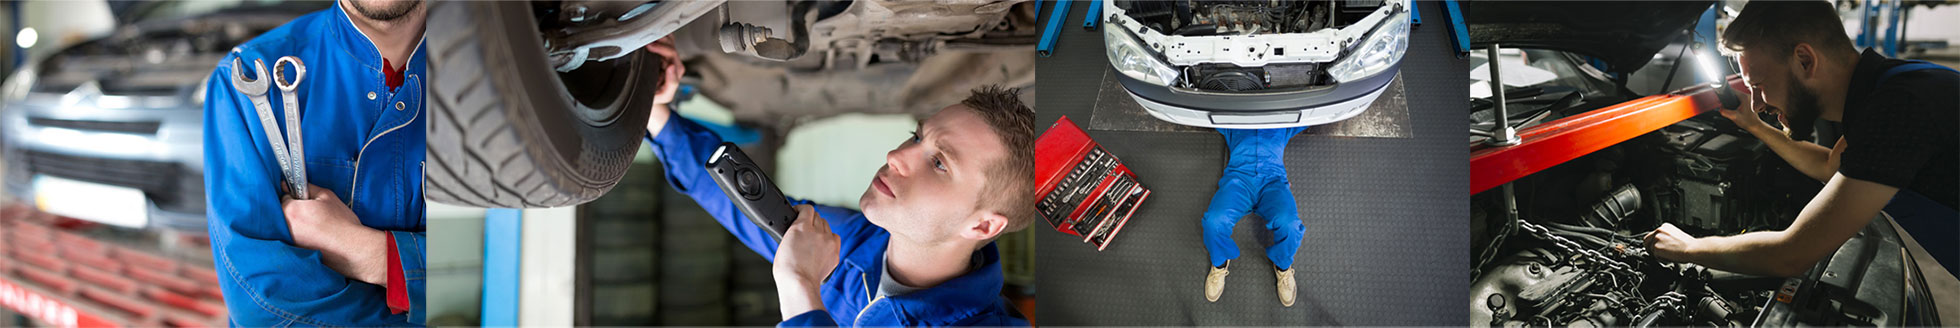 Réparation et entretien automobile